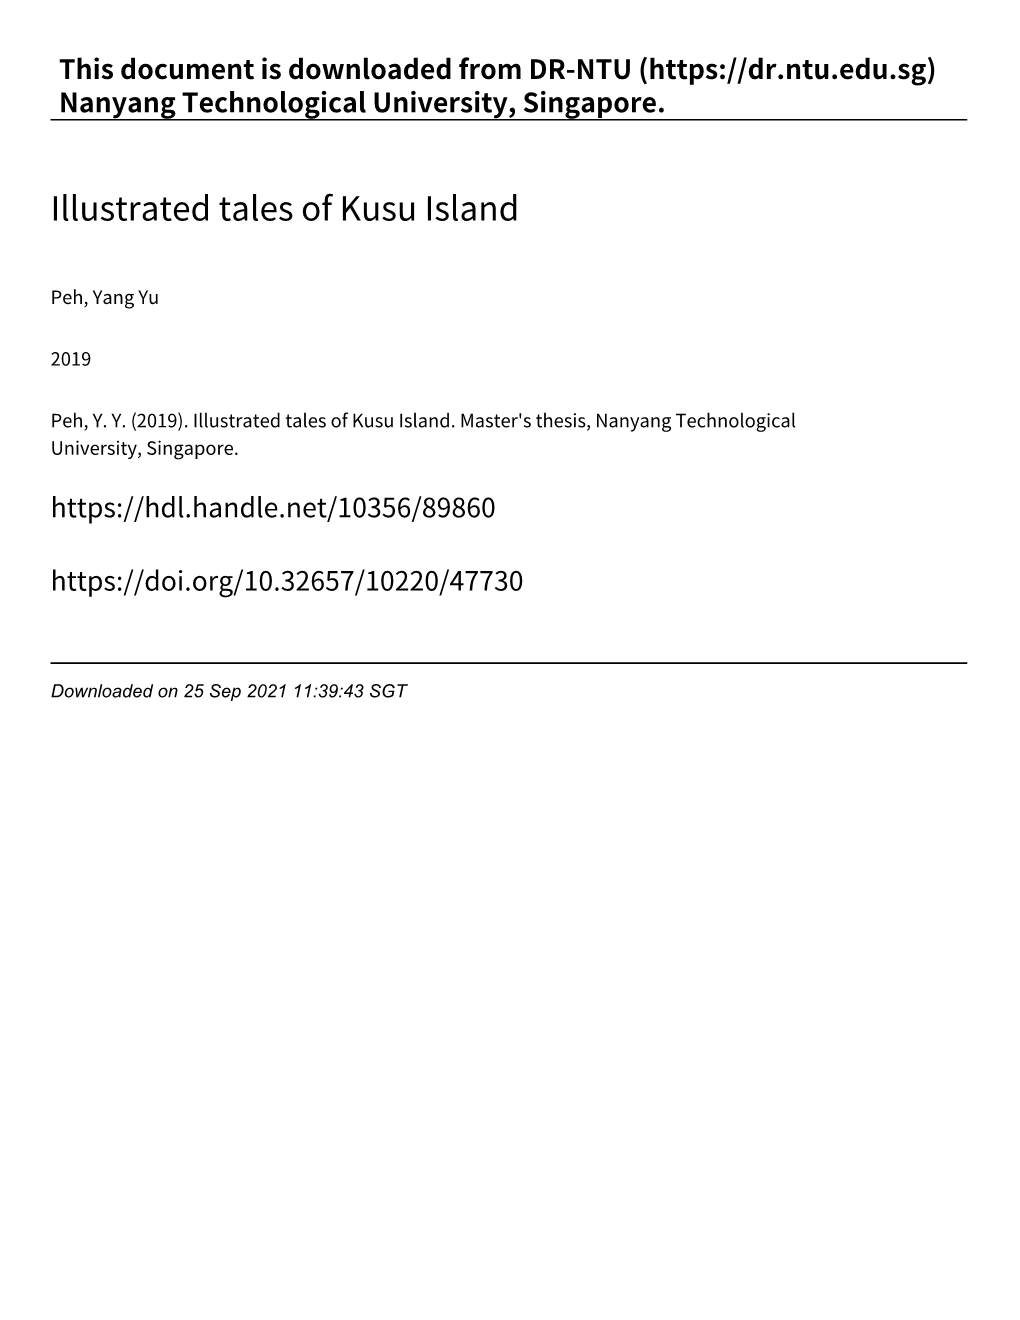 Illustrated Tales of Kusu Island